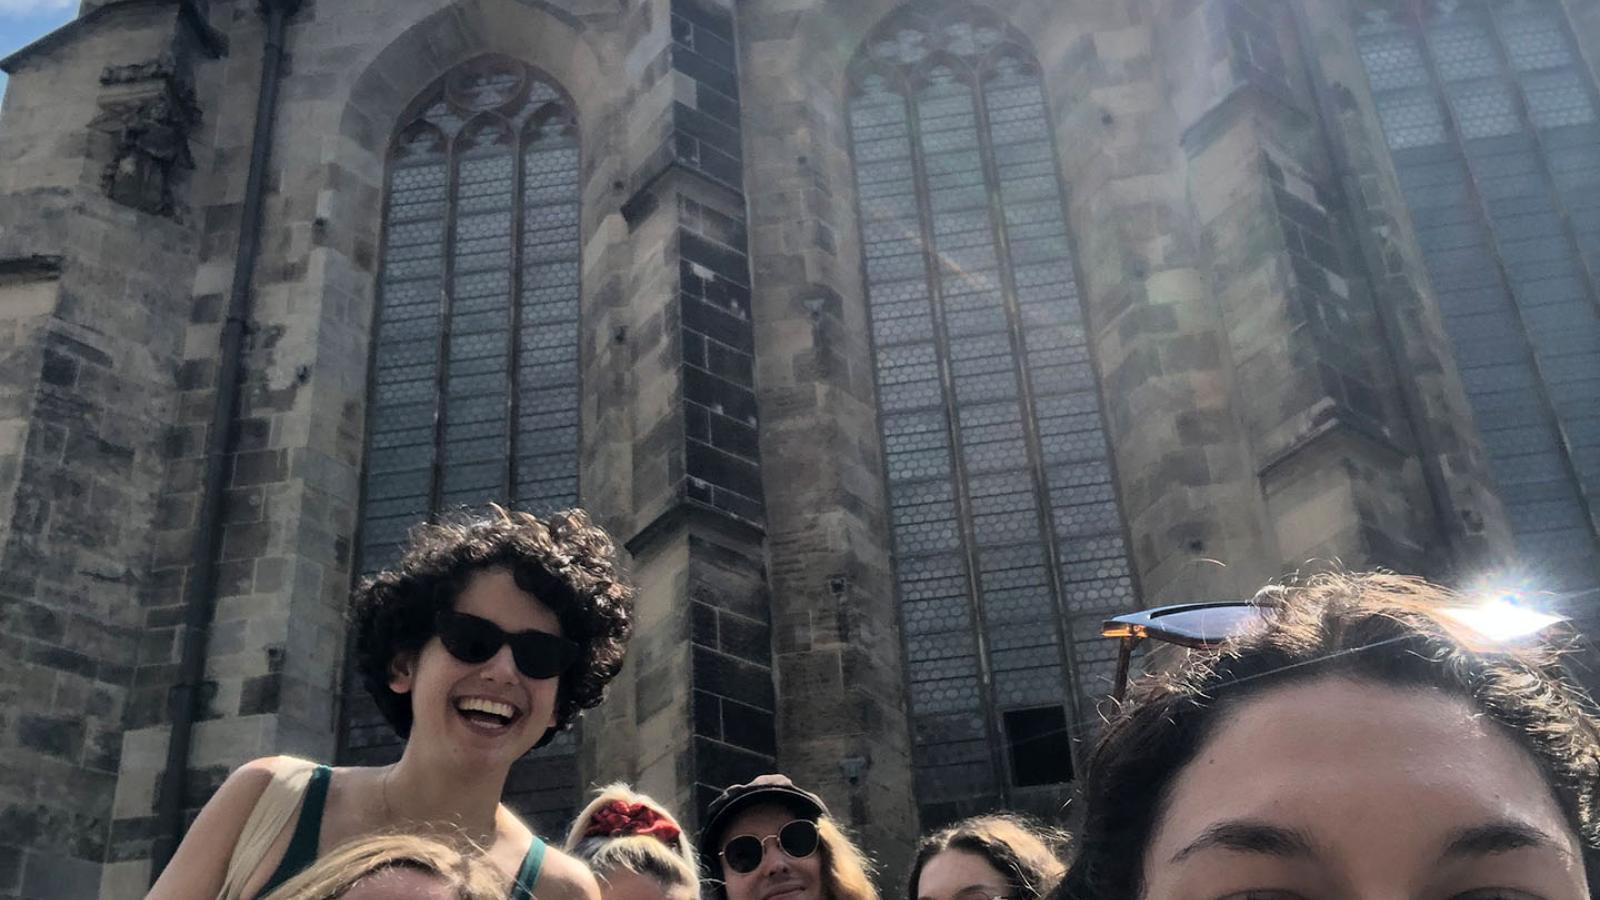 Sechs Personen fotografieren ein Selfie vor einer Kirche in Leipzig. Sie lachen groß.